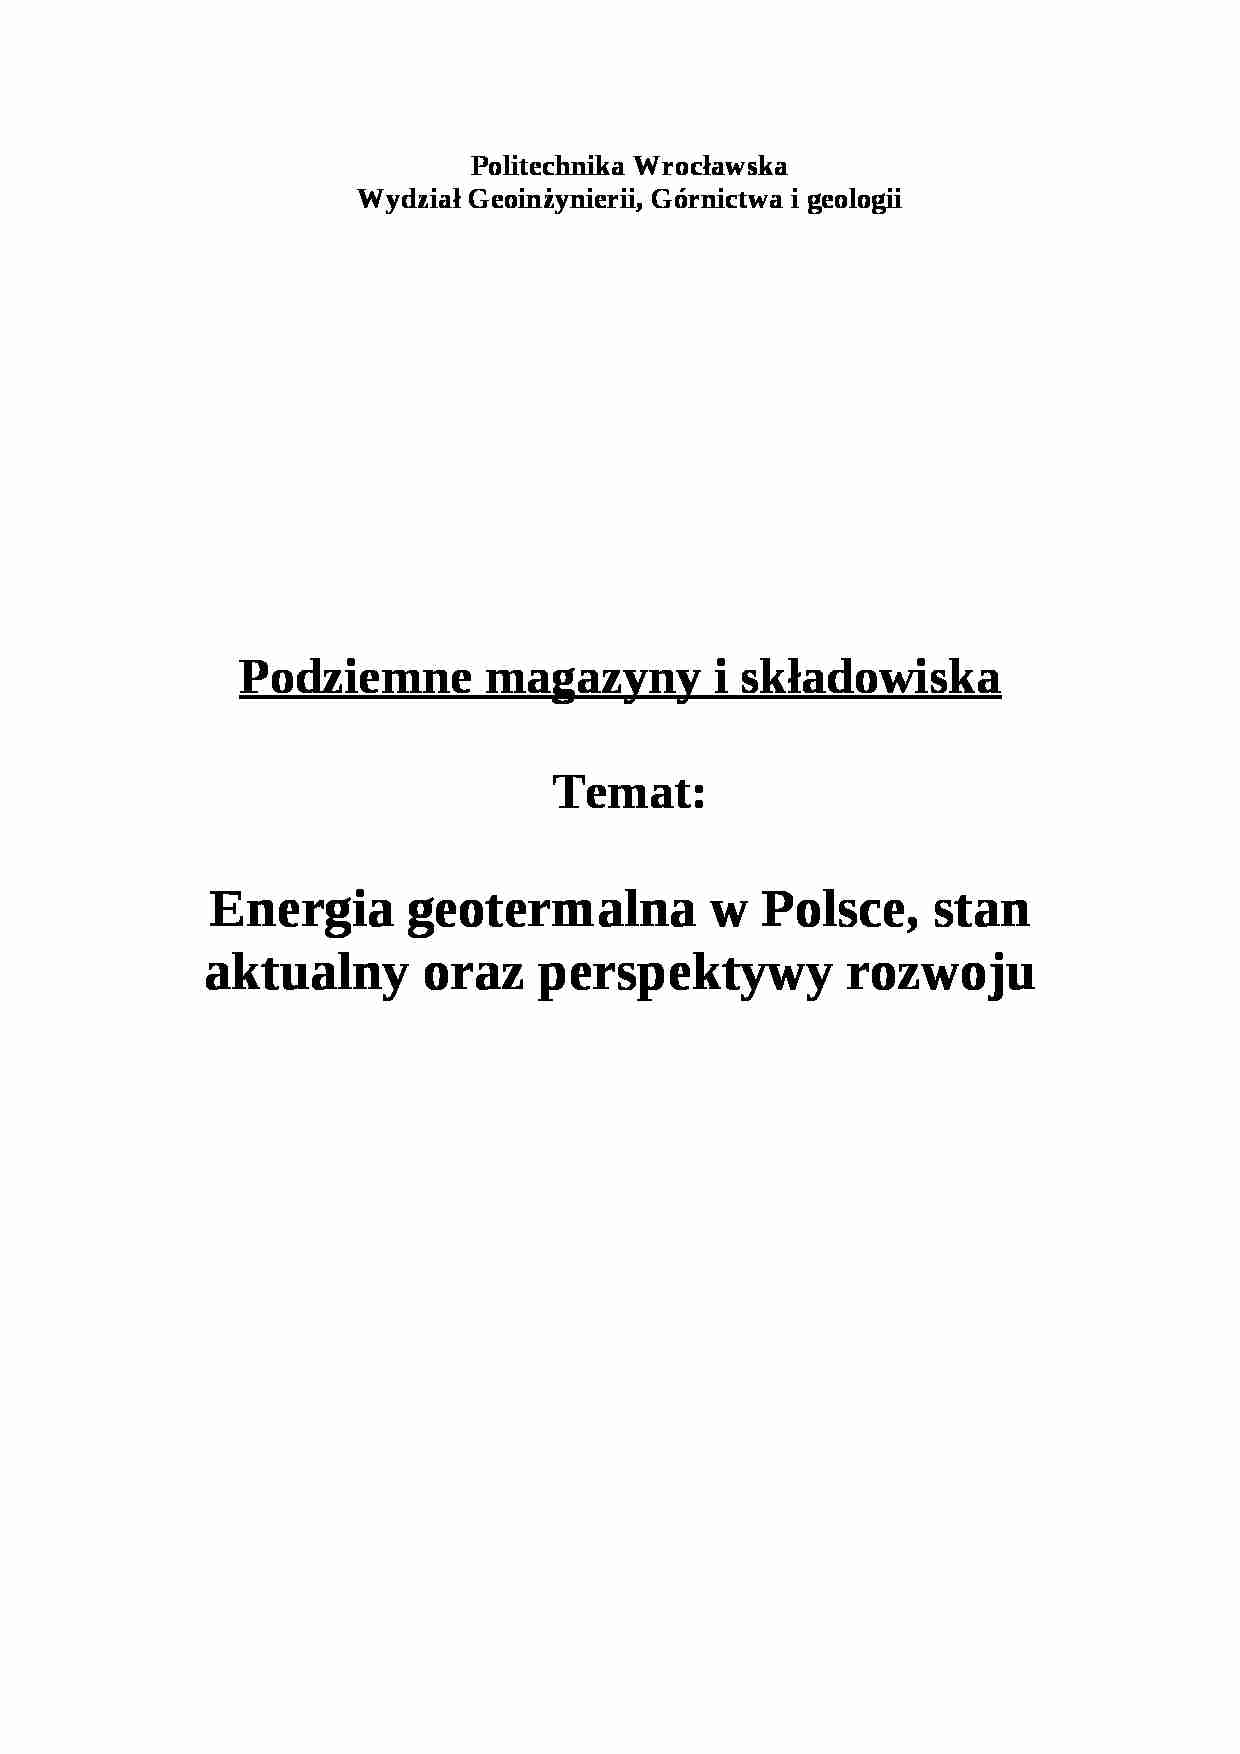 Energia geotermalna w Polsce - wykład - strona 1